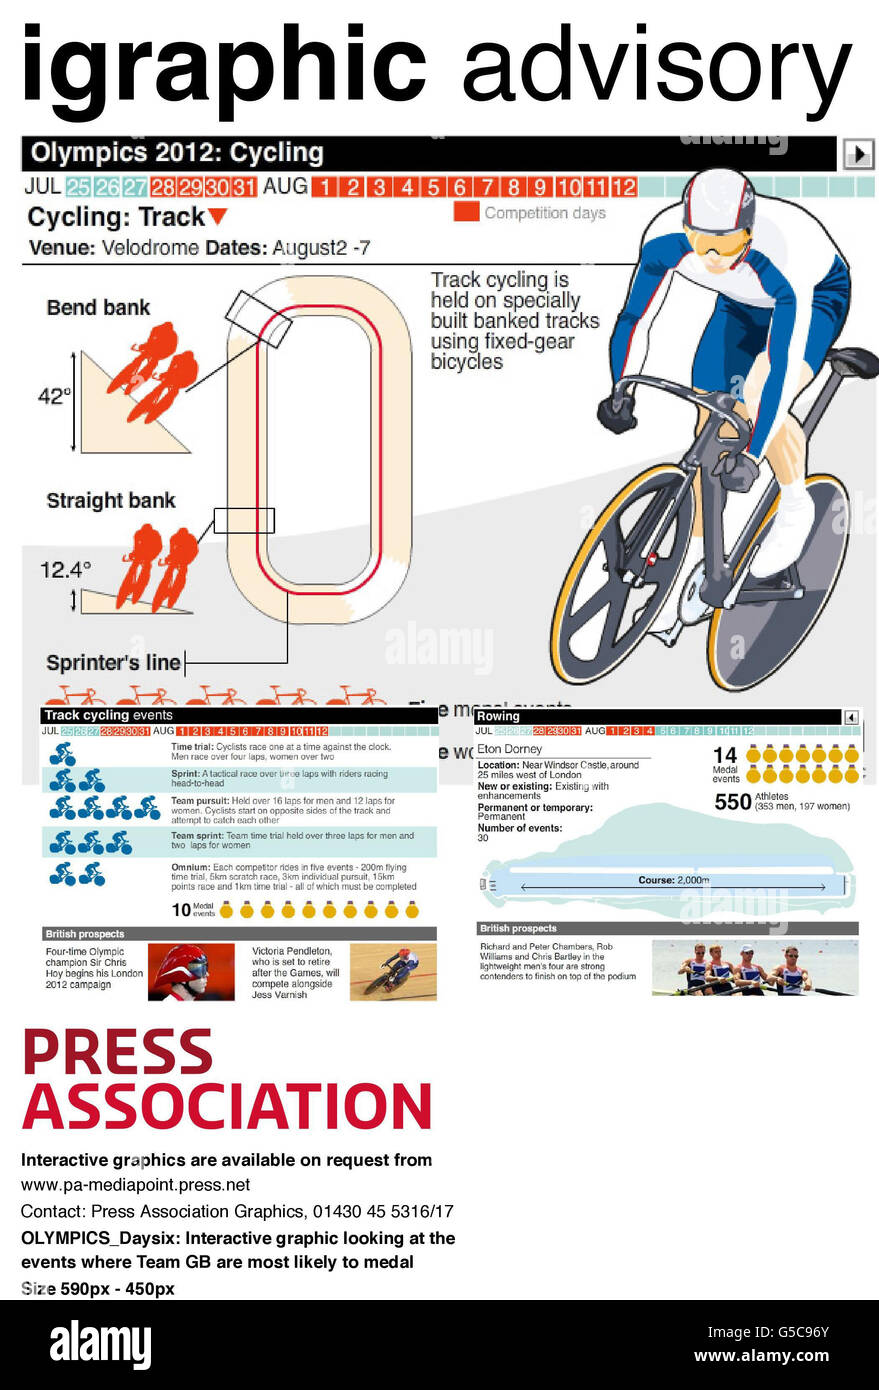 OLYMPICS Daysix: Grafica interattiva che guarda gli eventi, il ciclismo su pista e il canottaggio, dove il Team GB è più probabile che medaglie Foto Stock